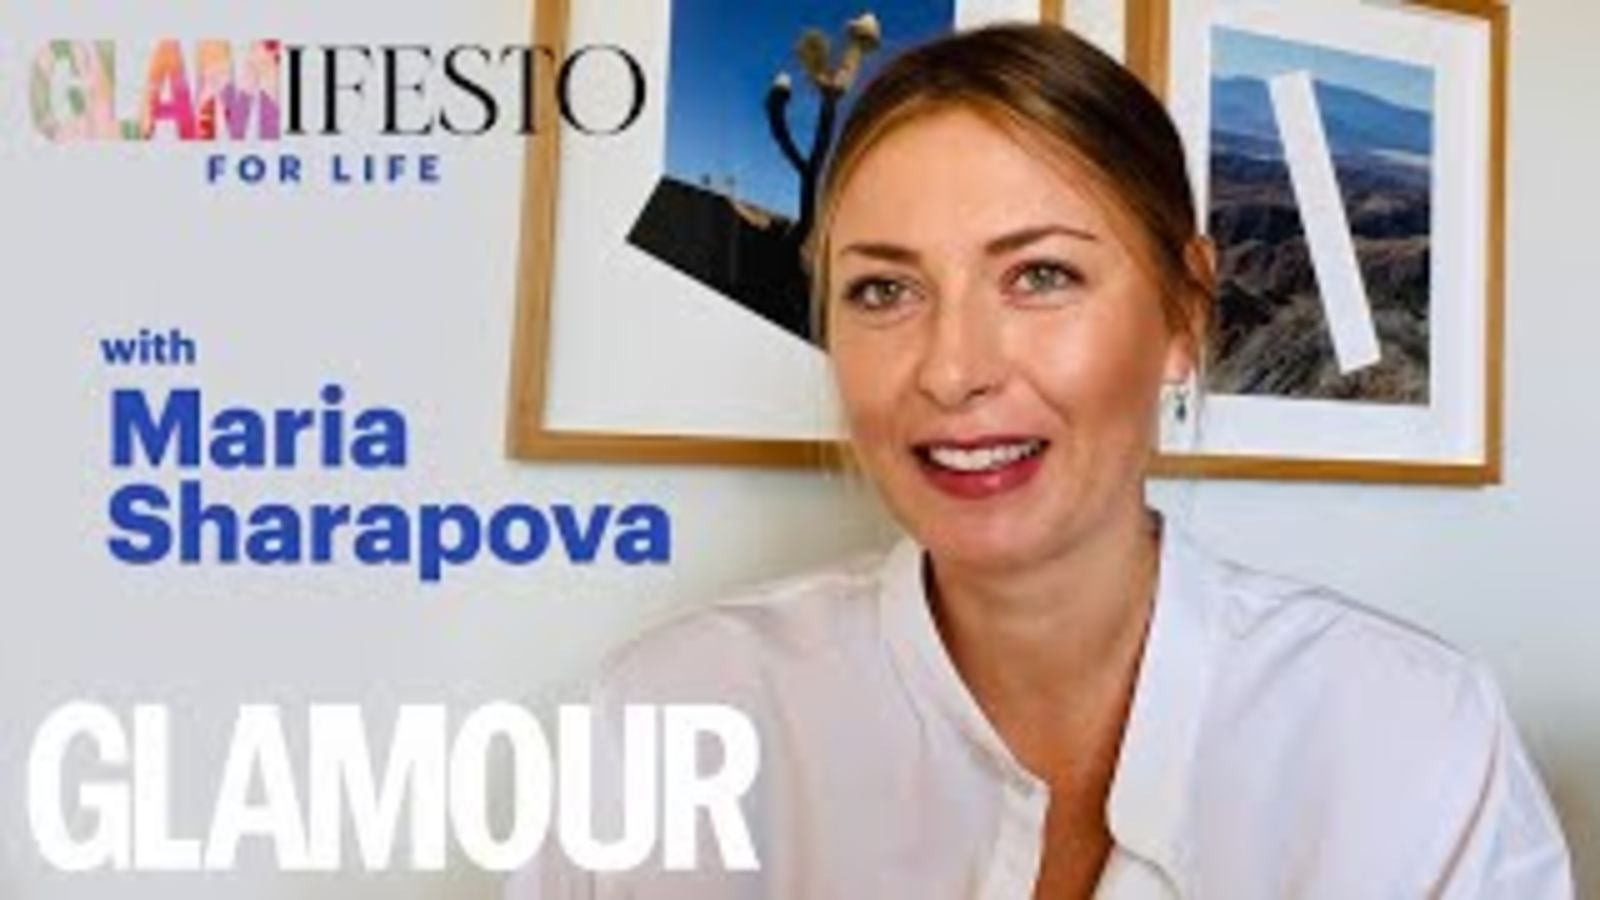 《与莎拉波娃共度一生的魅力》:关于健身、心理健康和退休